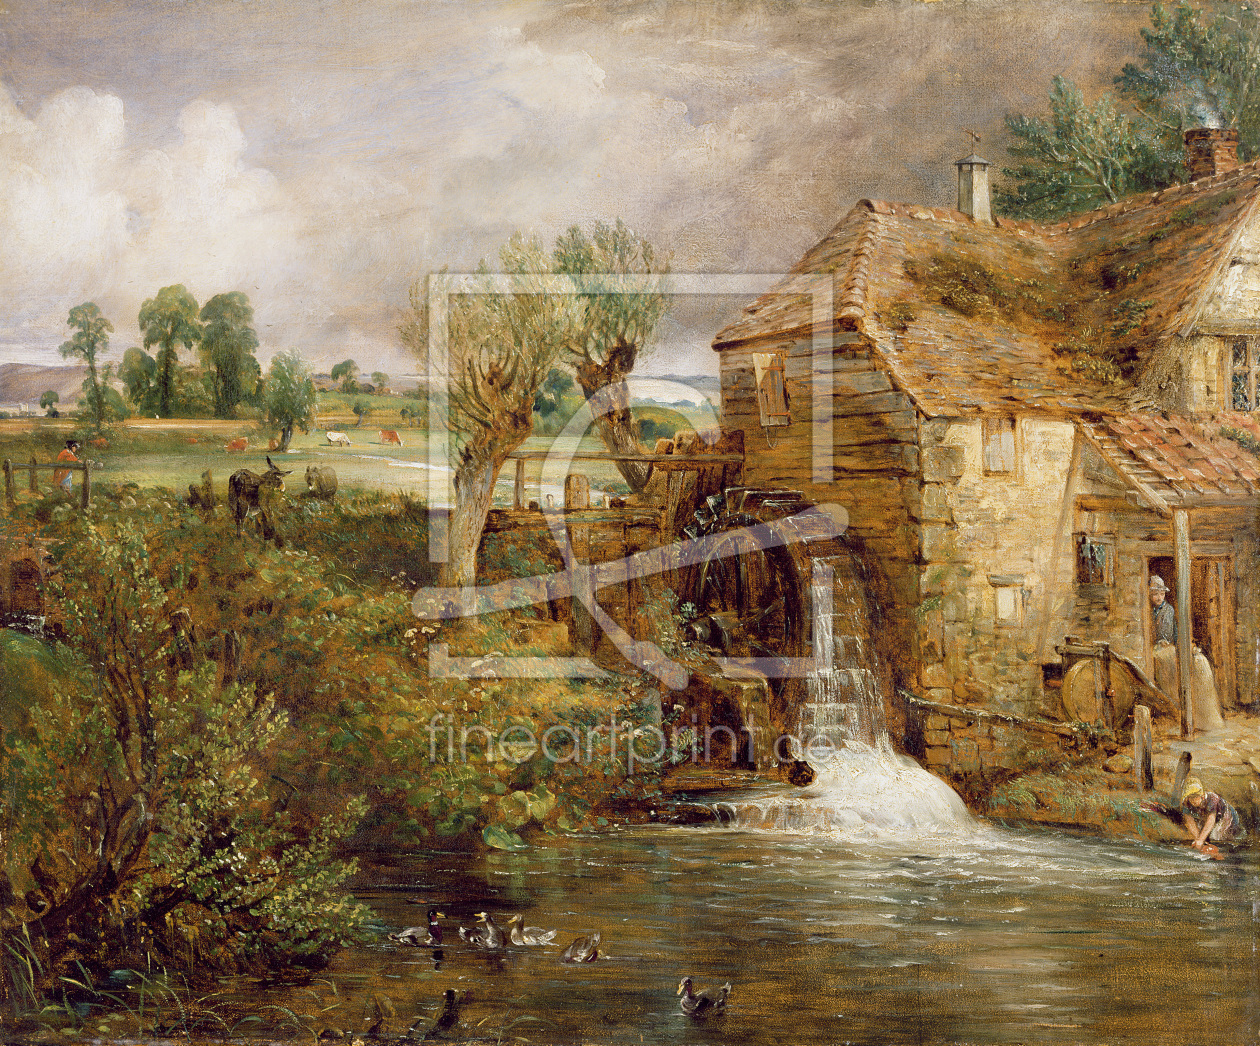 Bild-Nr.: 31000236 Mill at Gillingham, Dorset, 1825-26 erstellt von Constable, John